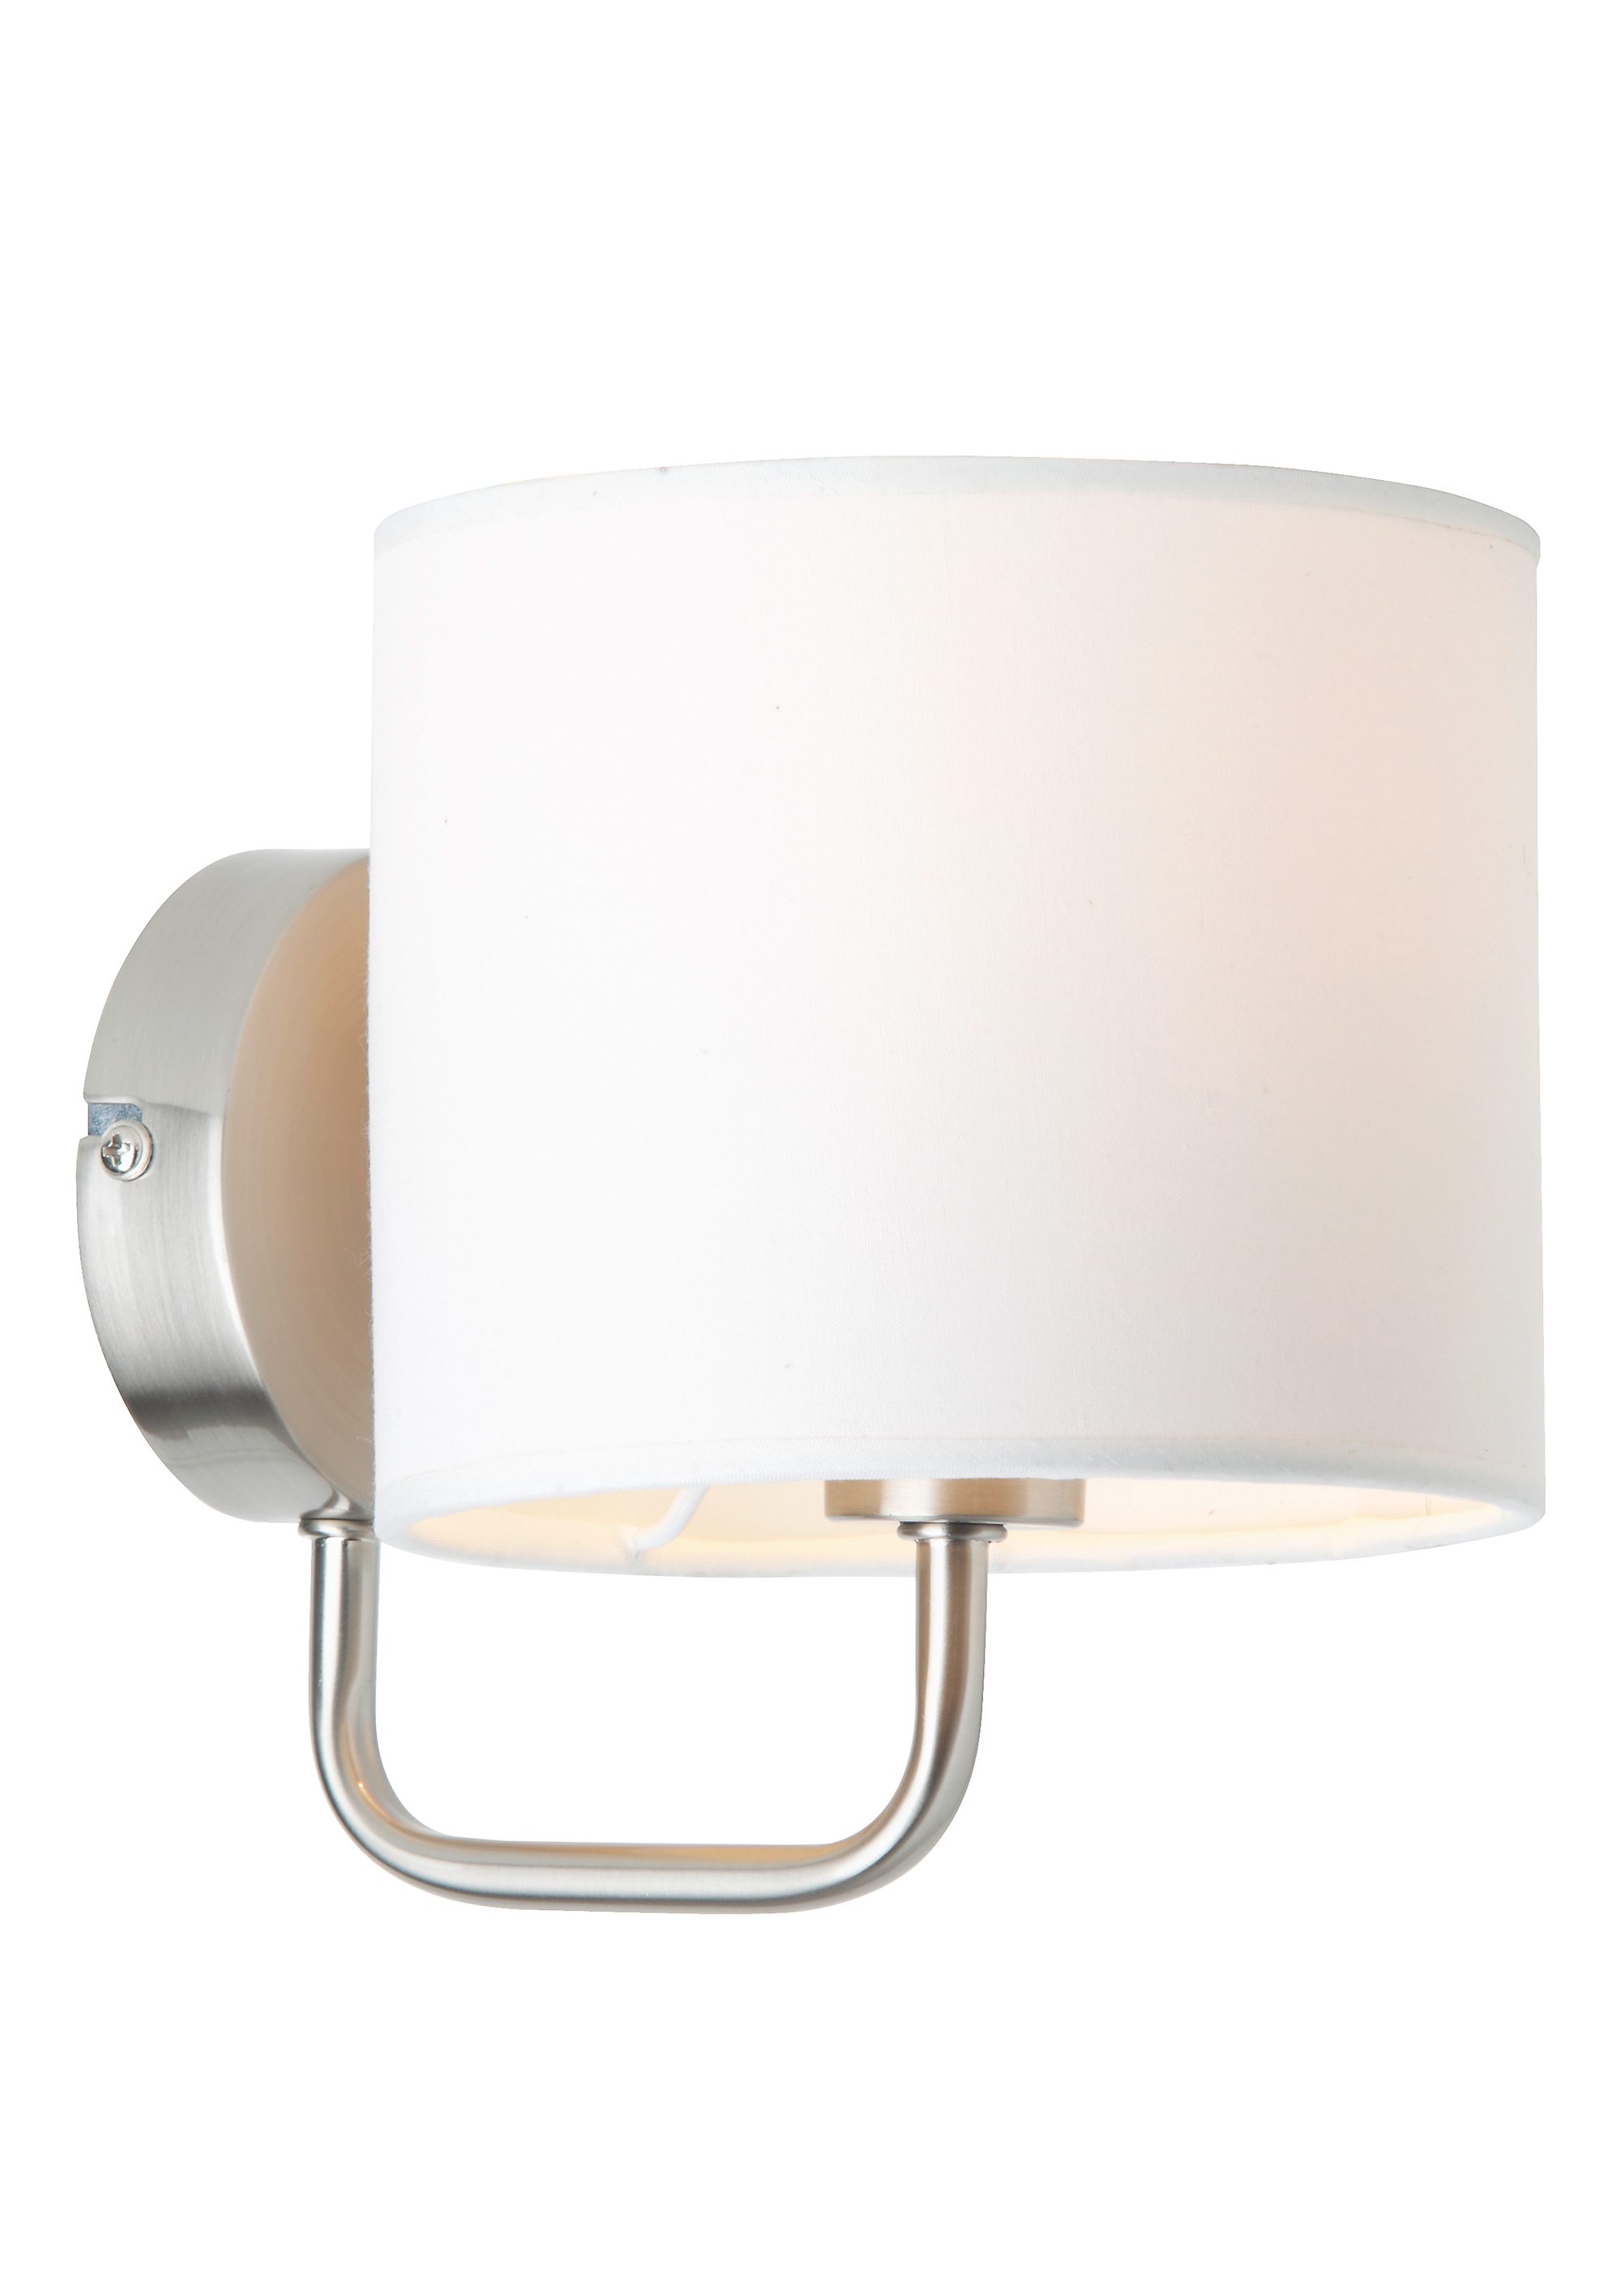 Luxus LED Wandleuchte Stoff Beleuchtung Höhe 26 cm Schalter Wohnzimmer EEK A+ 